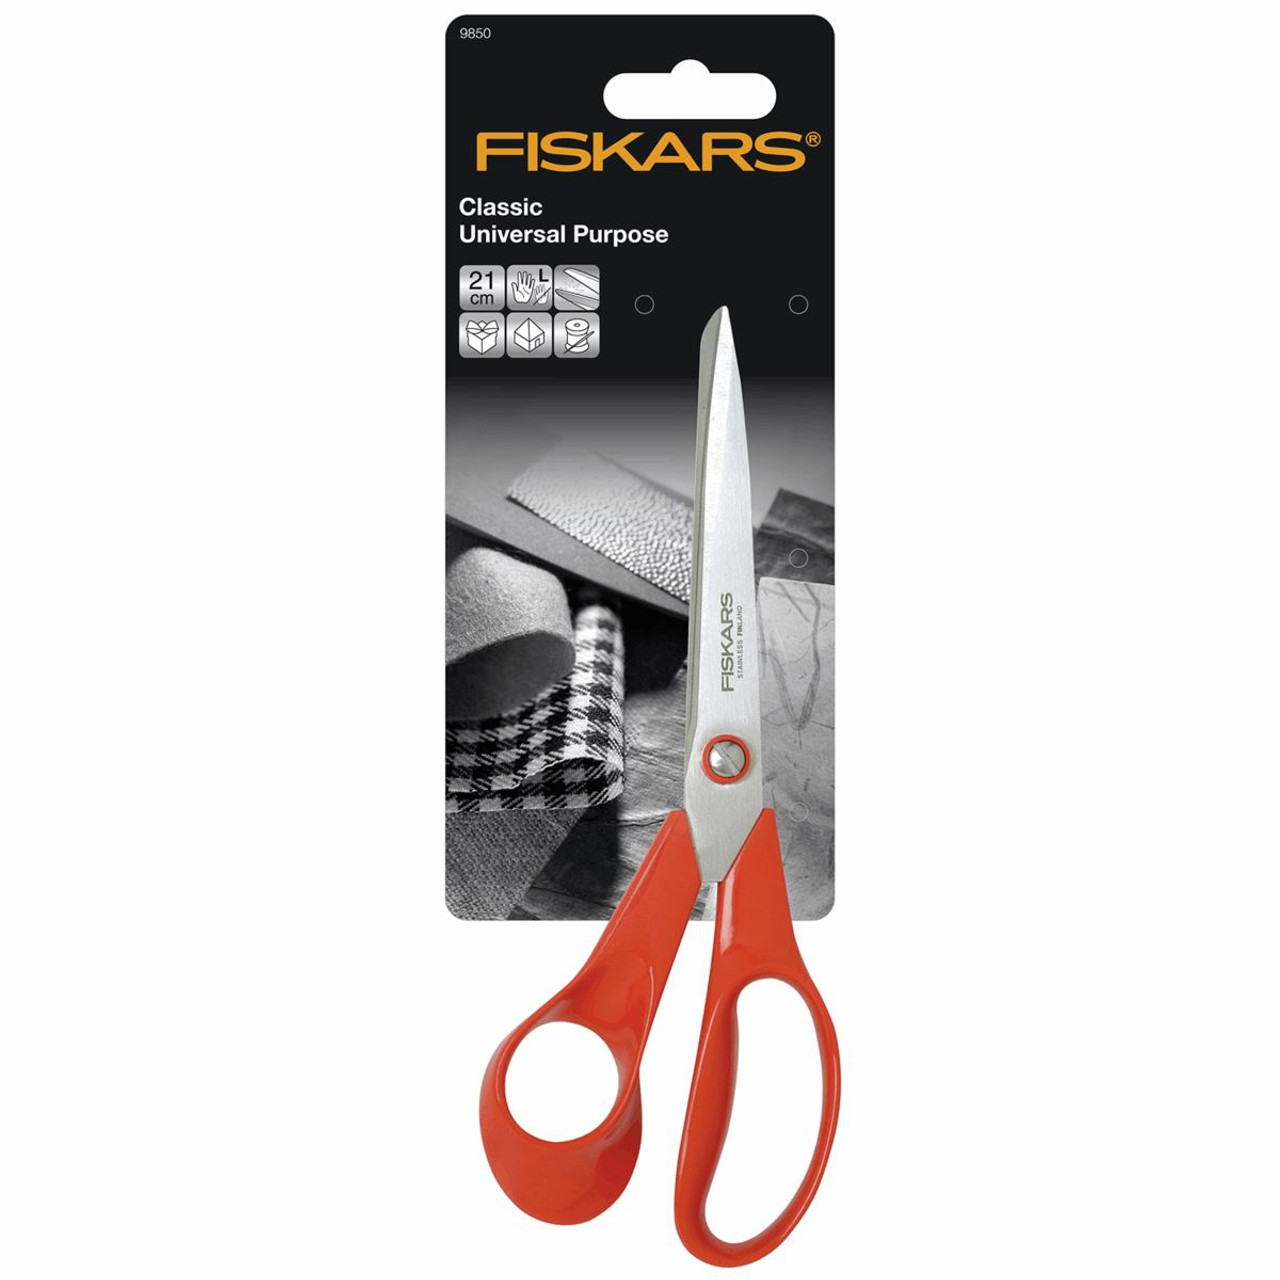  Fiskars Scissors Left Handed